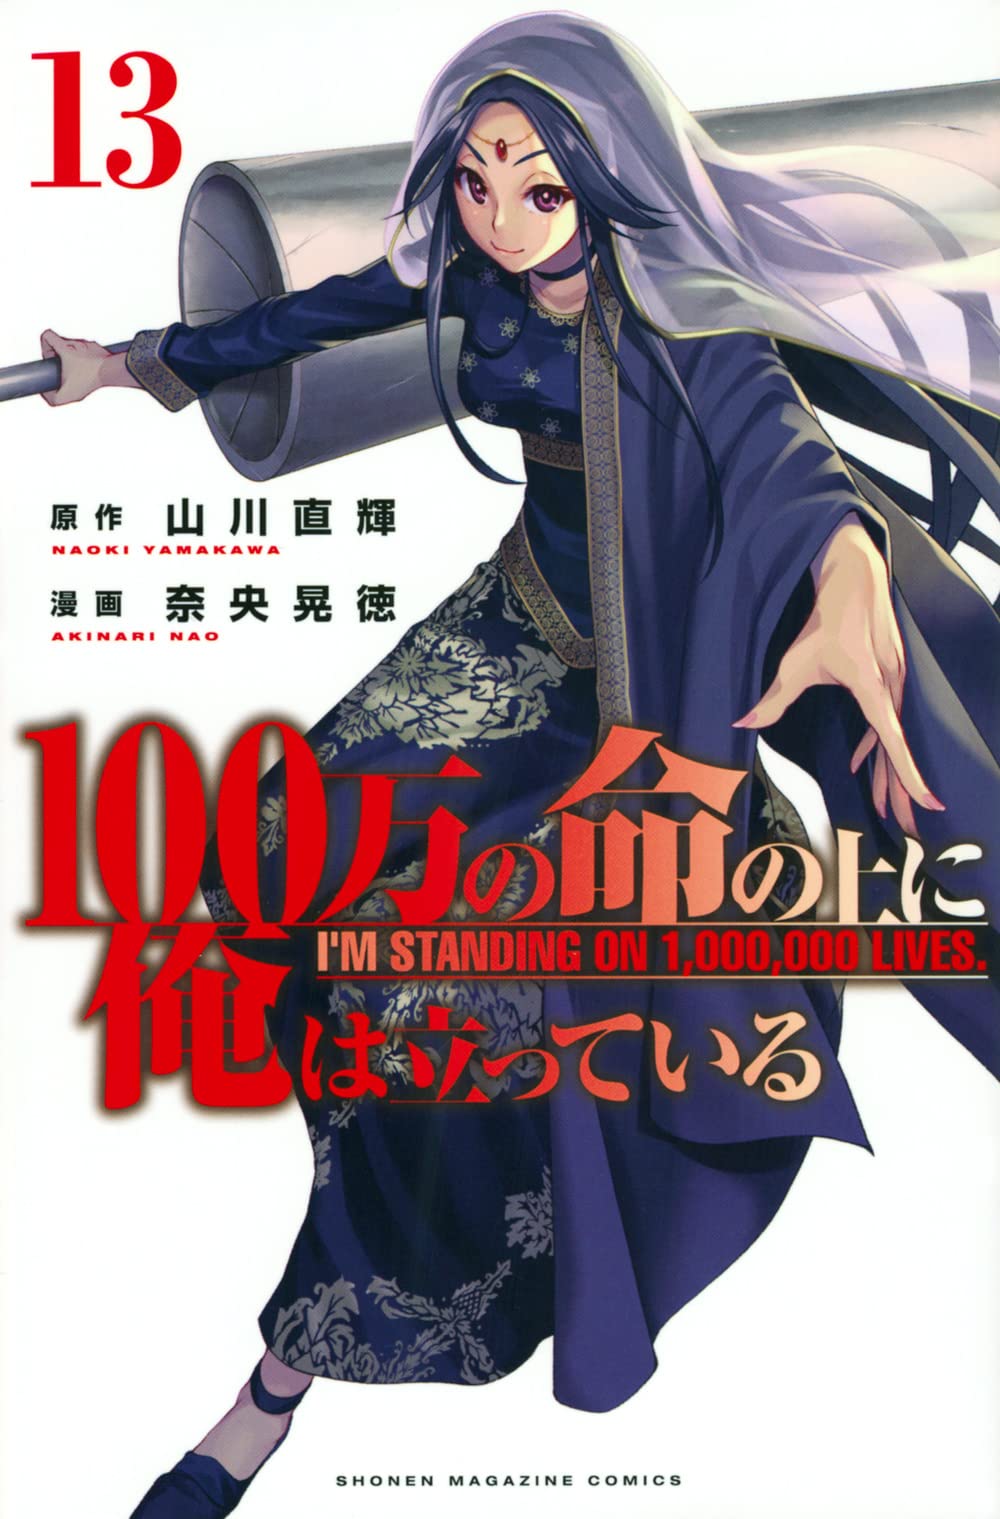 Japanese Manga Comic Book 100-man no Inochi no Ue ni Ore wa Tatte iru 1-14  set